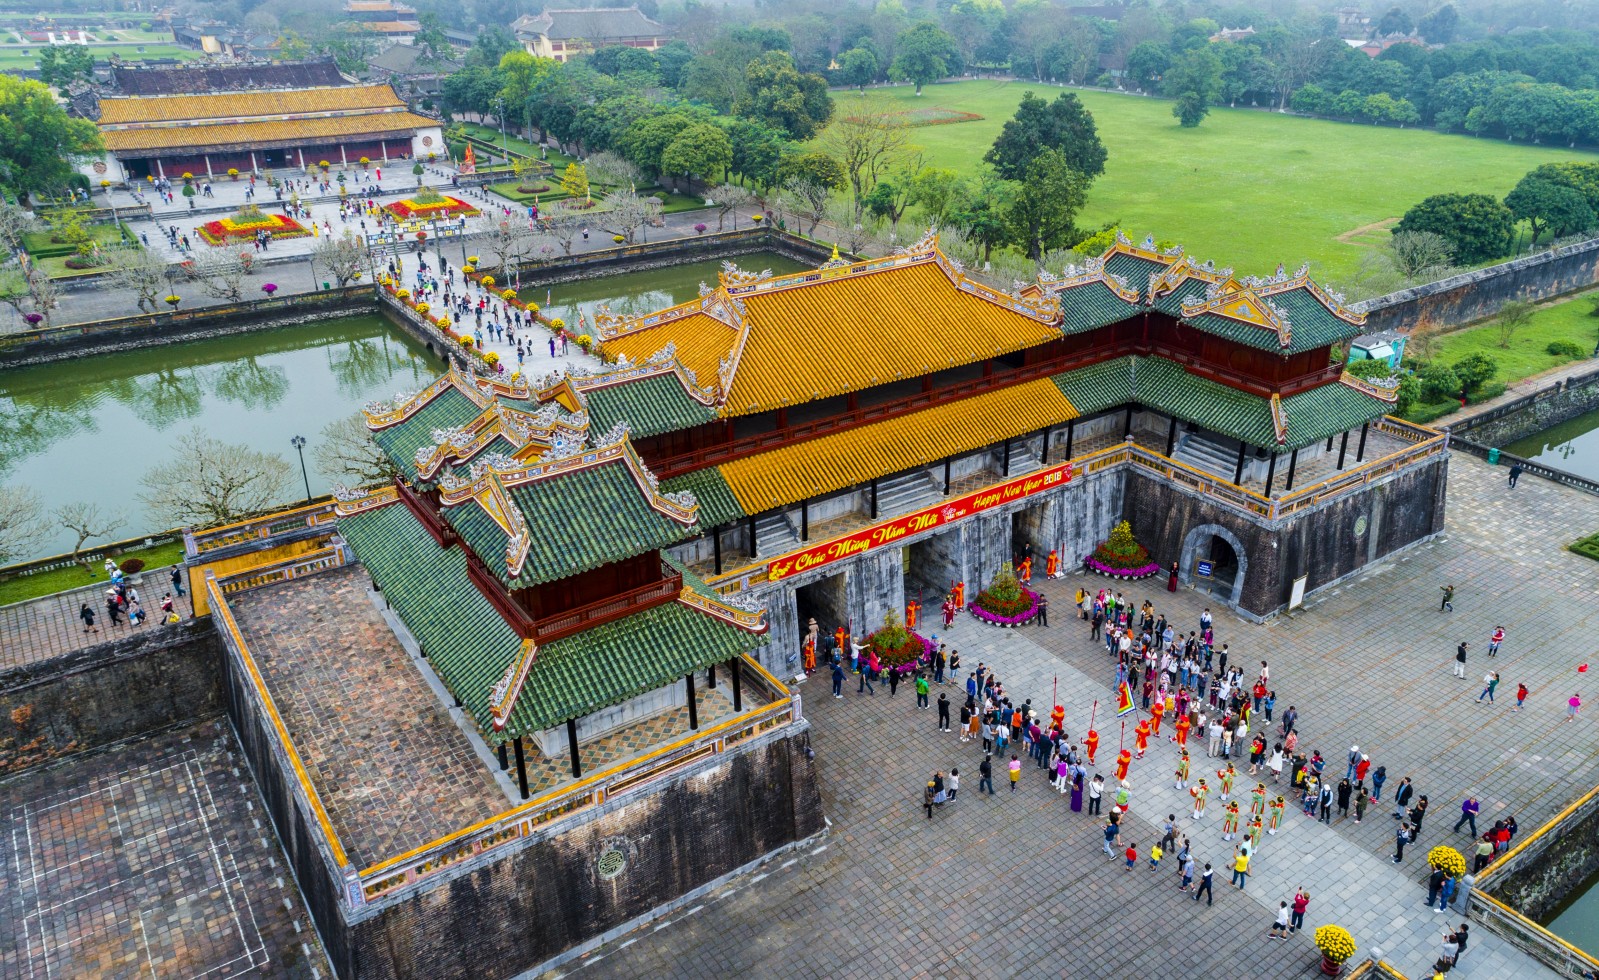 Tái hiện cảnh đổi gác của triều đình Nguyễn xưa phục vụ khách du lịch.​